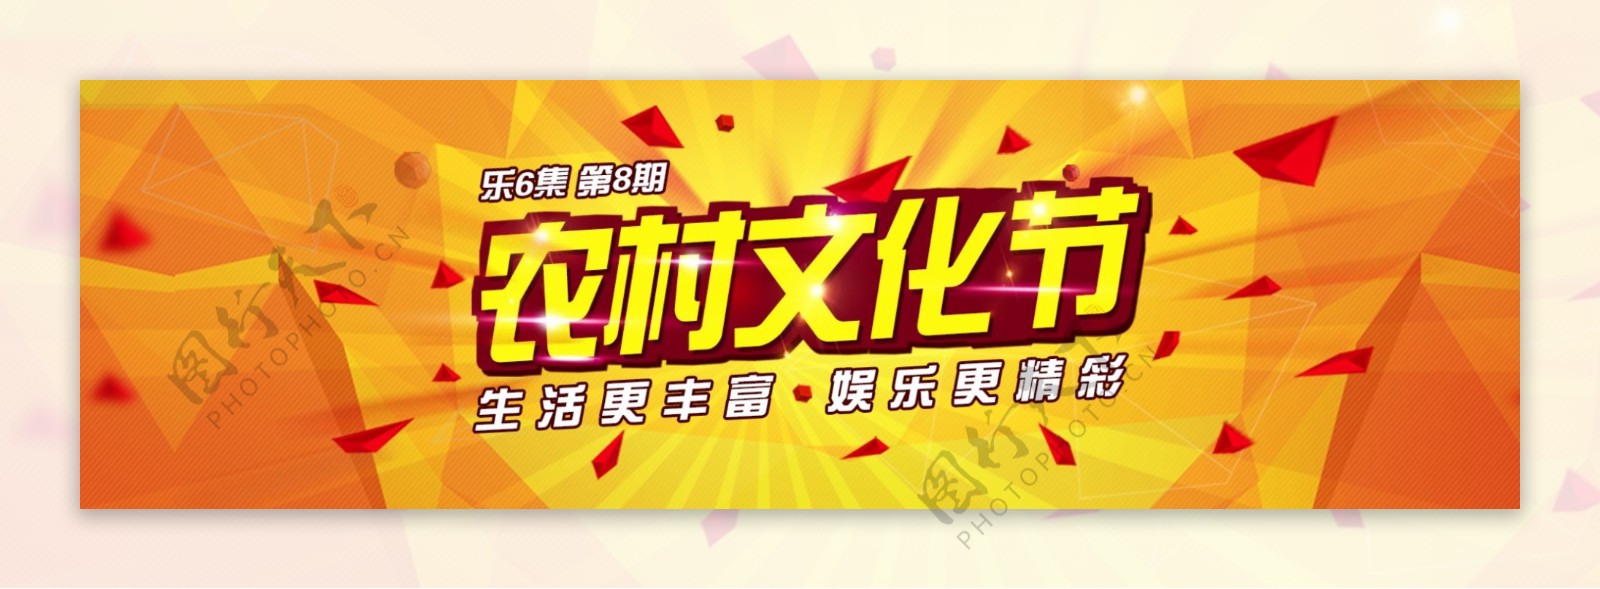 农村文化节Banner